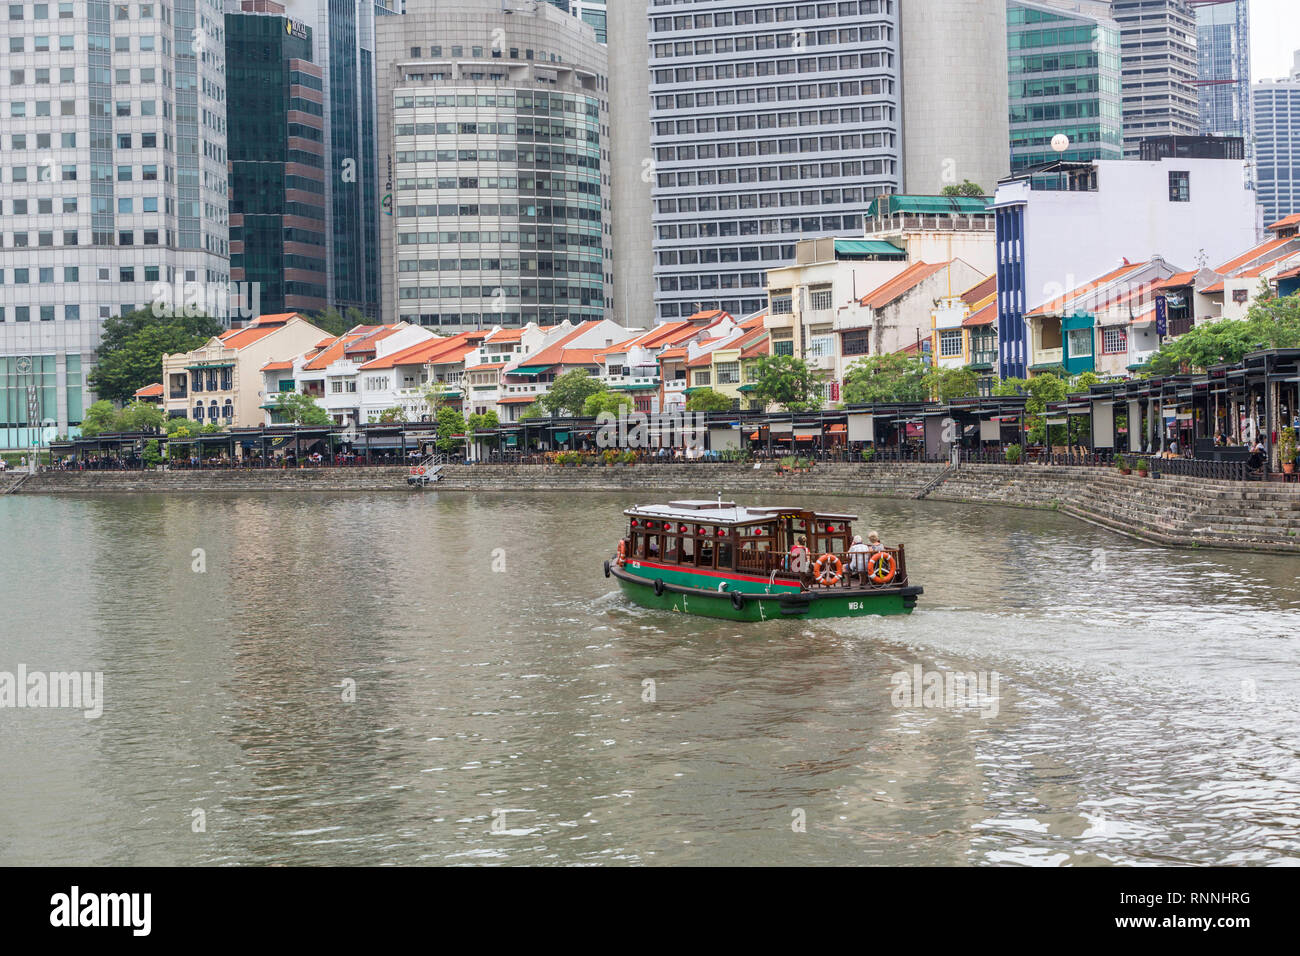 Wasser Taxi auf dem Singapore River. Boat Quay, ehemaligen Shop Häuser jetzt Restaurants und Bars. Gebäude der Financial District im Hintergrund. Singapur. Stockfoto